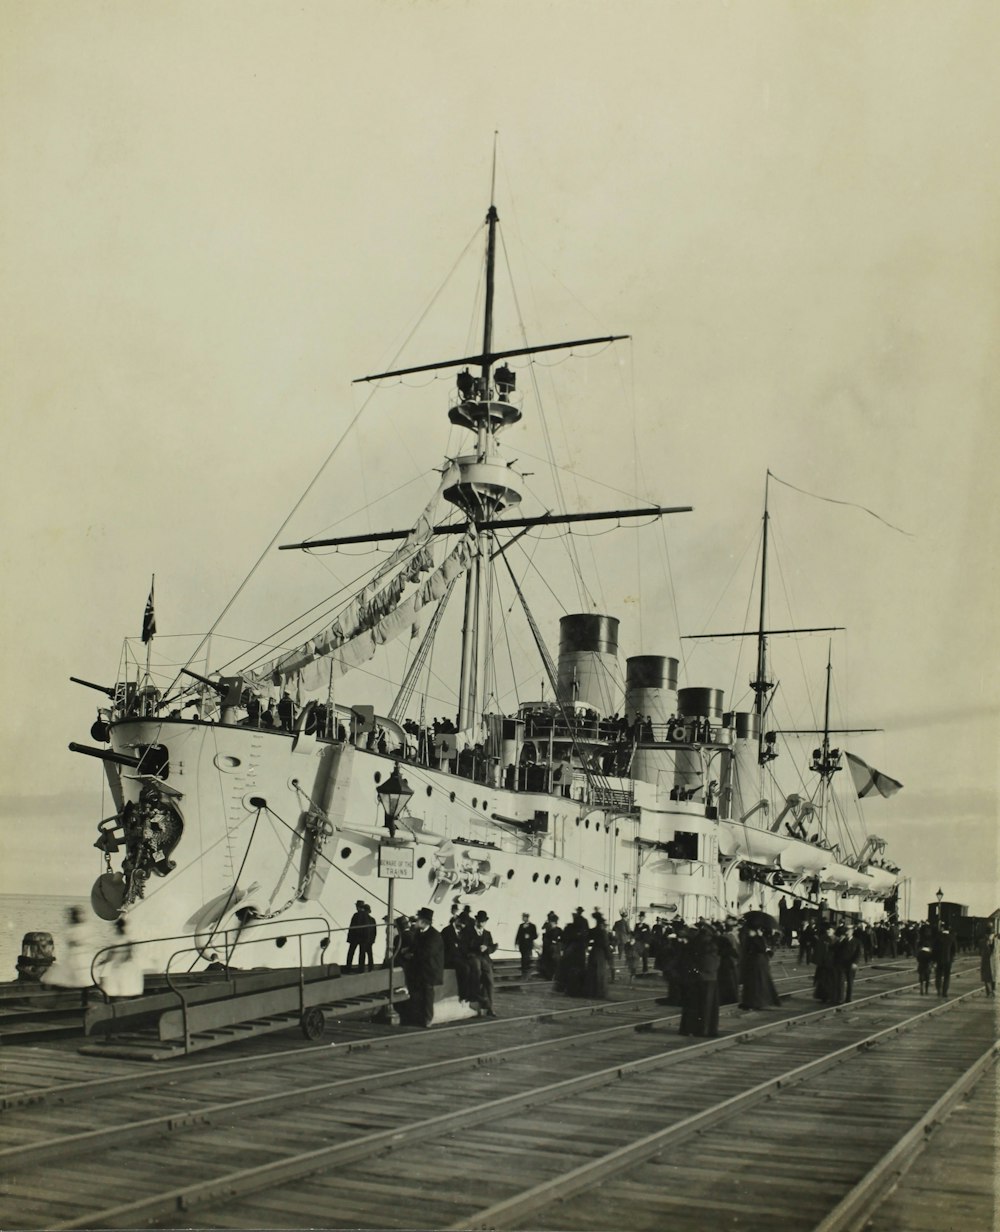 Foto en escala de grises del barco en el muelle